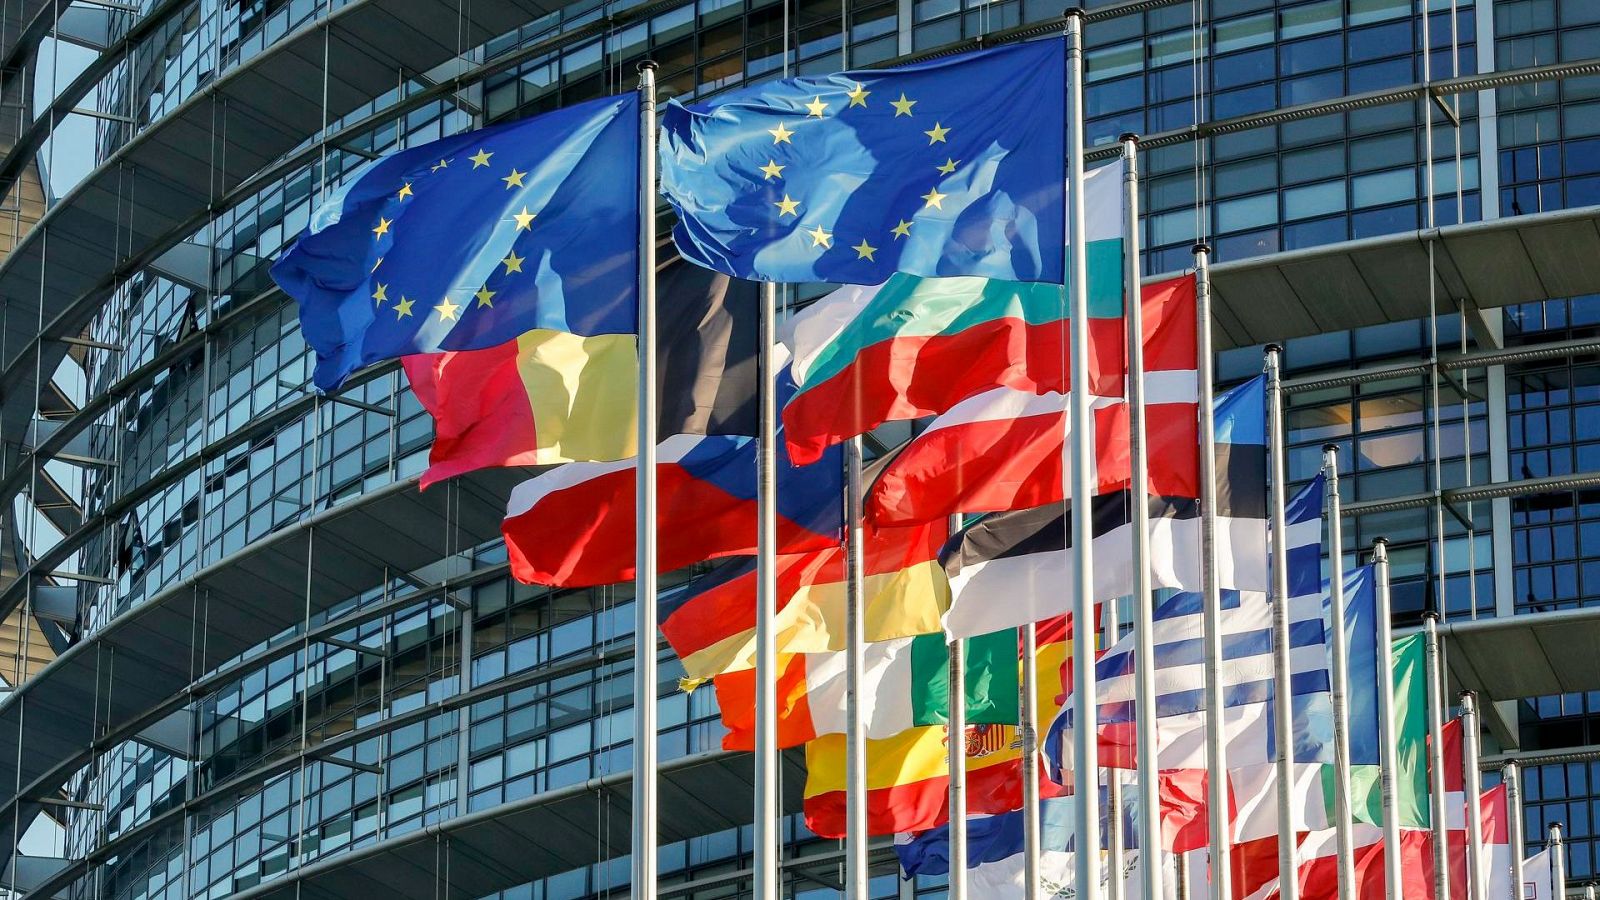 Banderas de los Estados miembro ondean frente al Parlamento Europeo en Estrasburgo, Francia